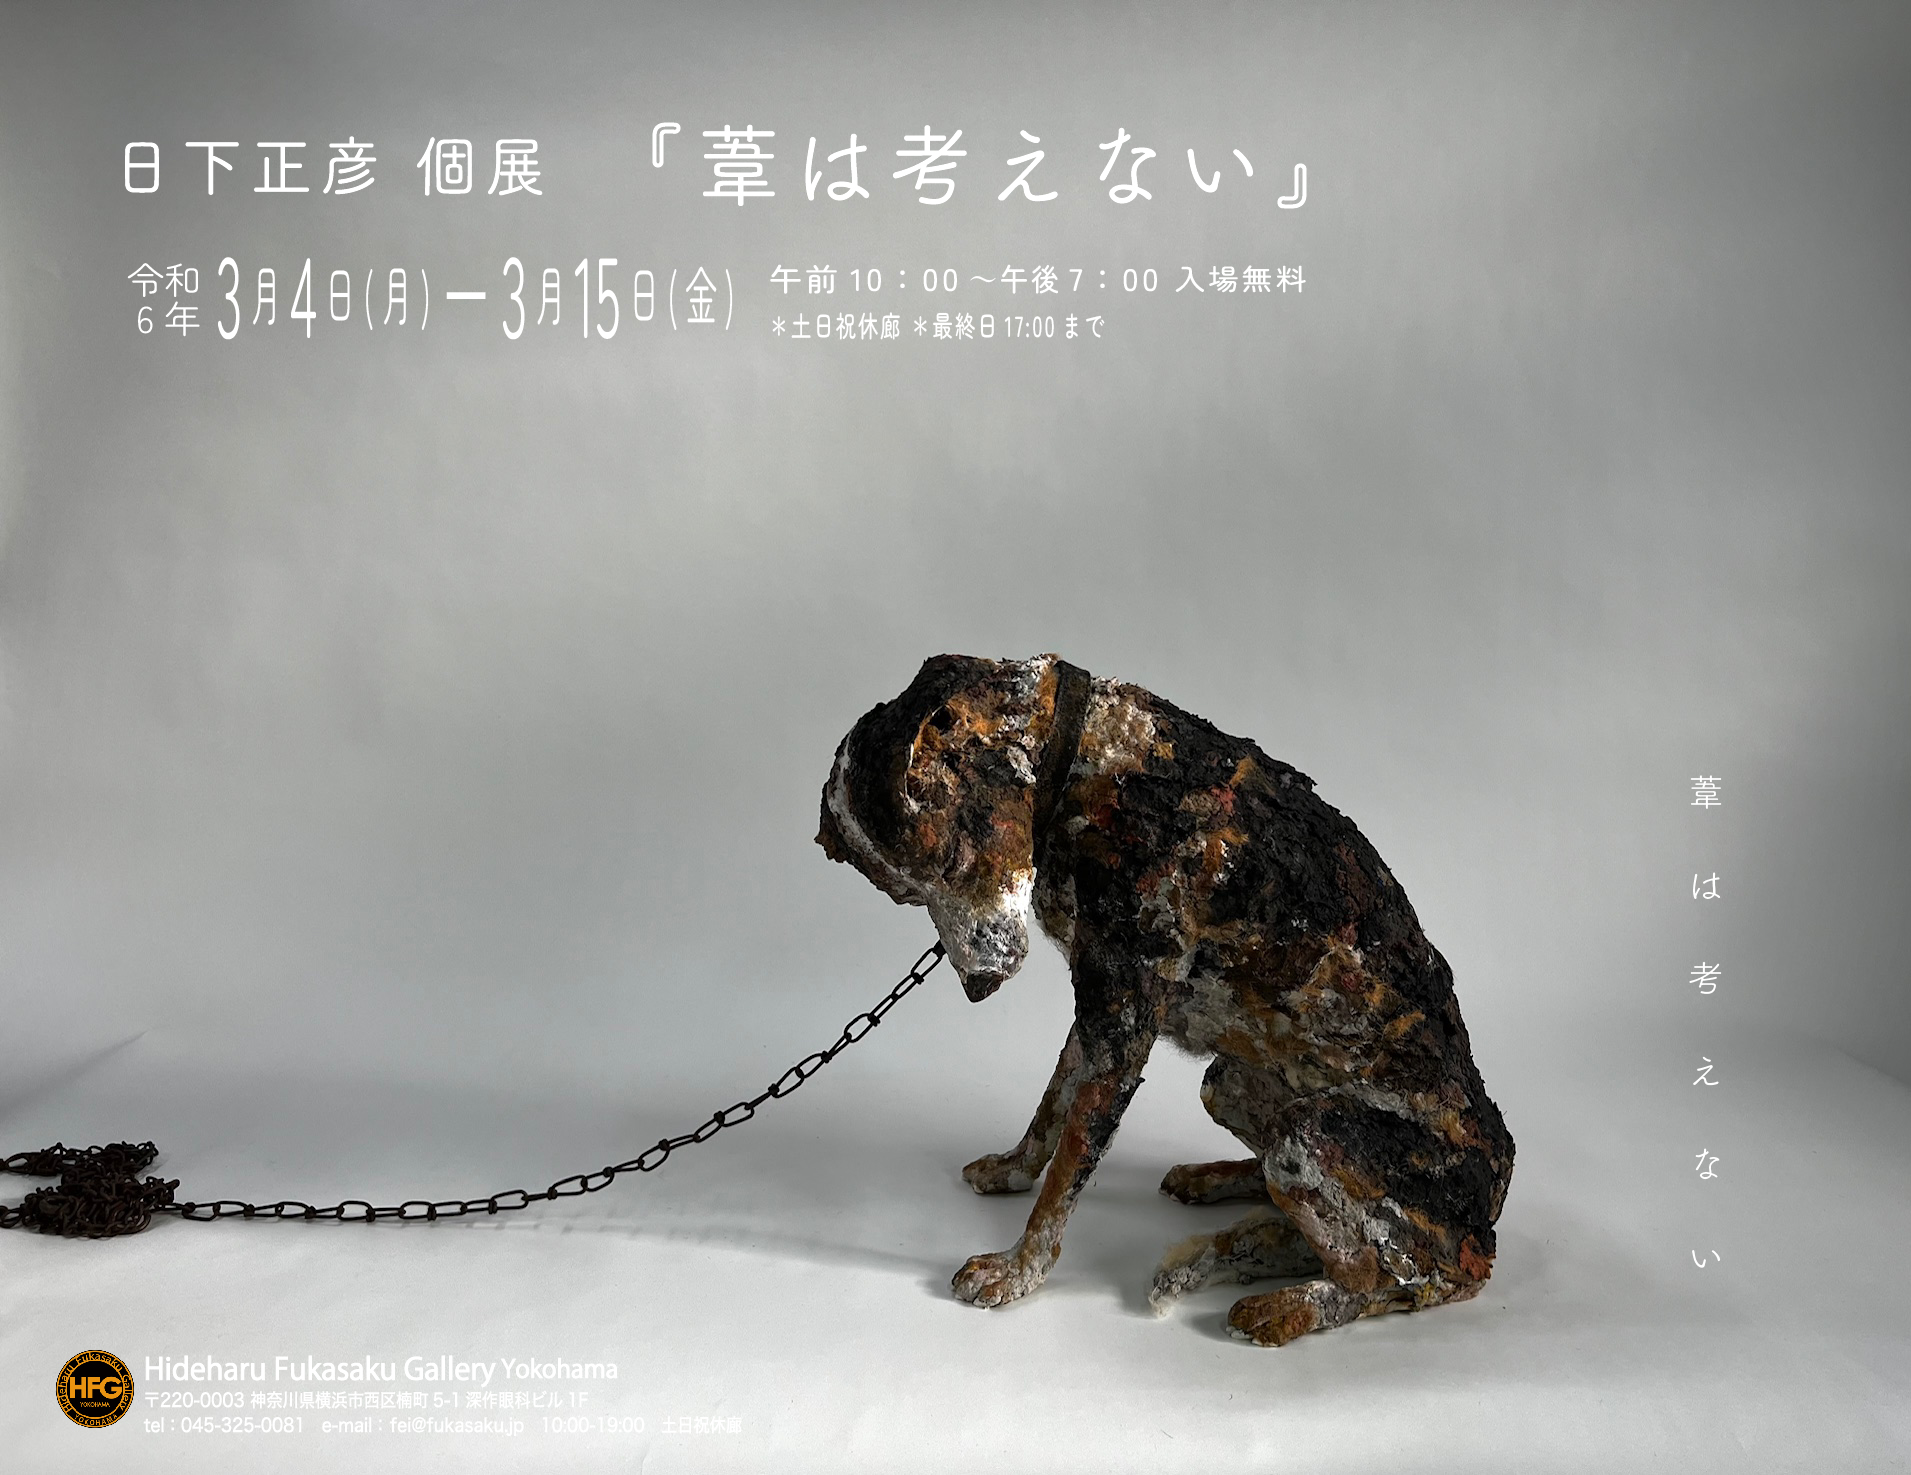 日下正彦個展 『葦は考えない』 » Hideharu Fukasaku Gallery & Museum